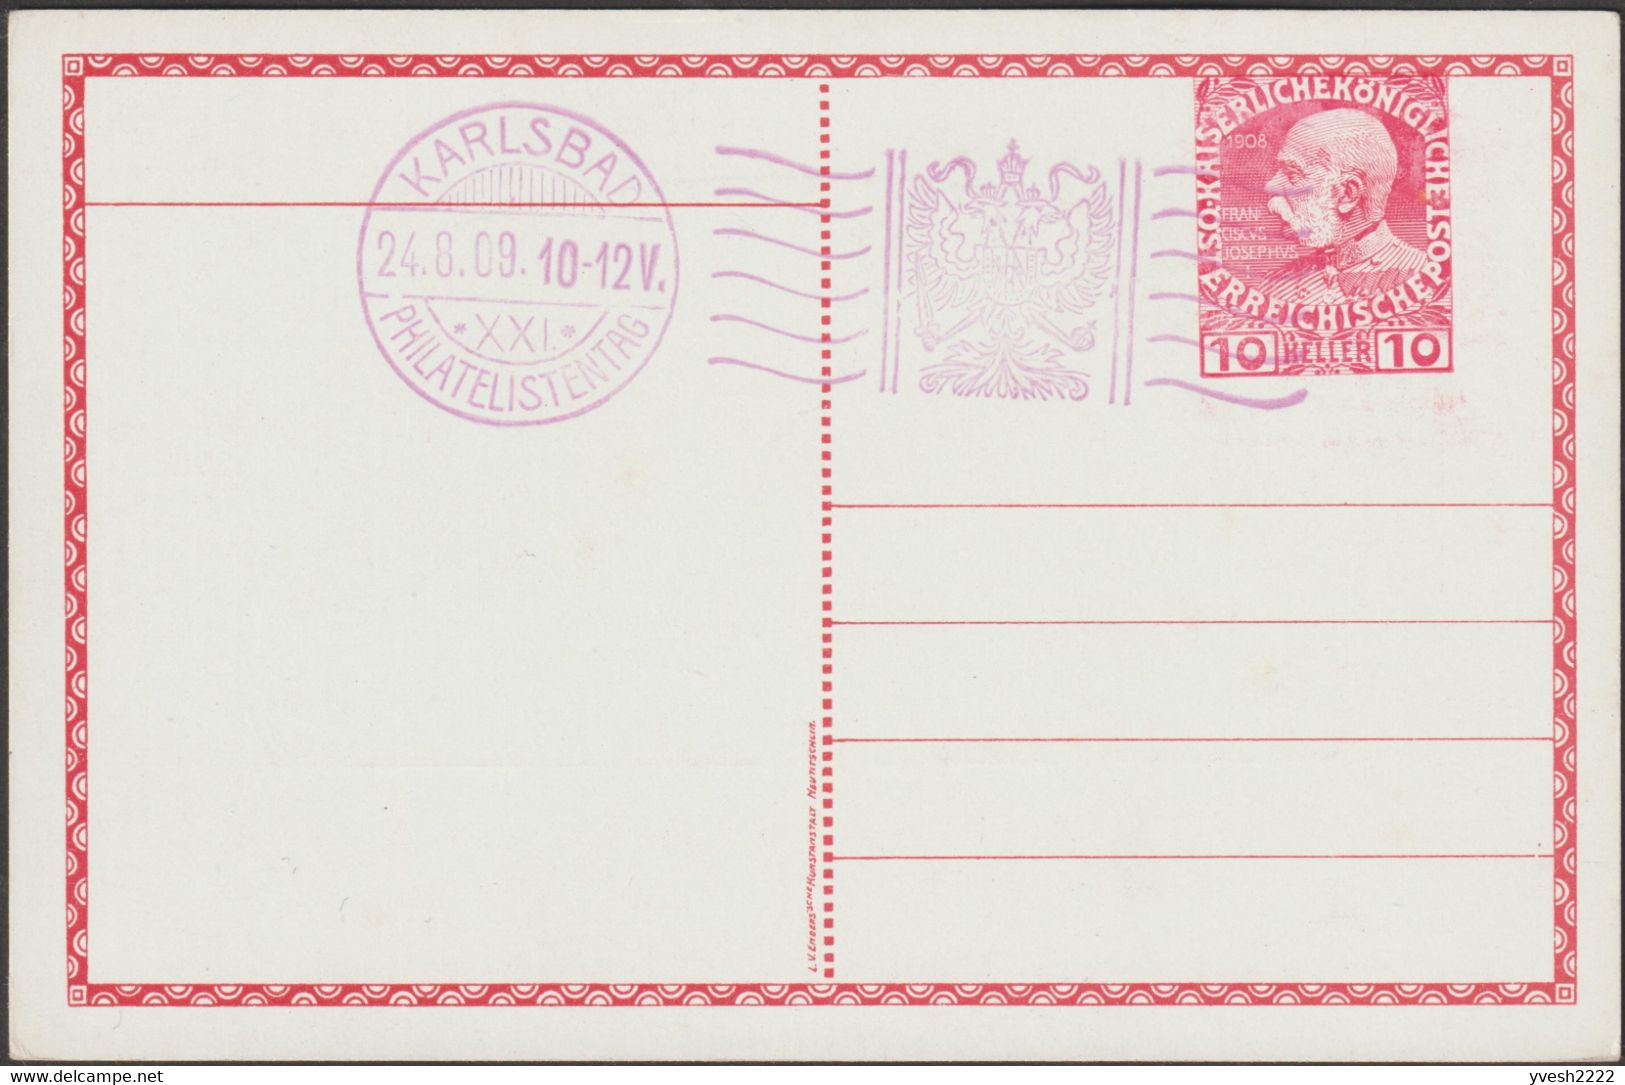 Autriche-Hongrie 1909. 5 entiers timbrés sur commande. Karlovy Vary, Karlsbad, thermalisme, art nouveau